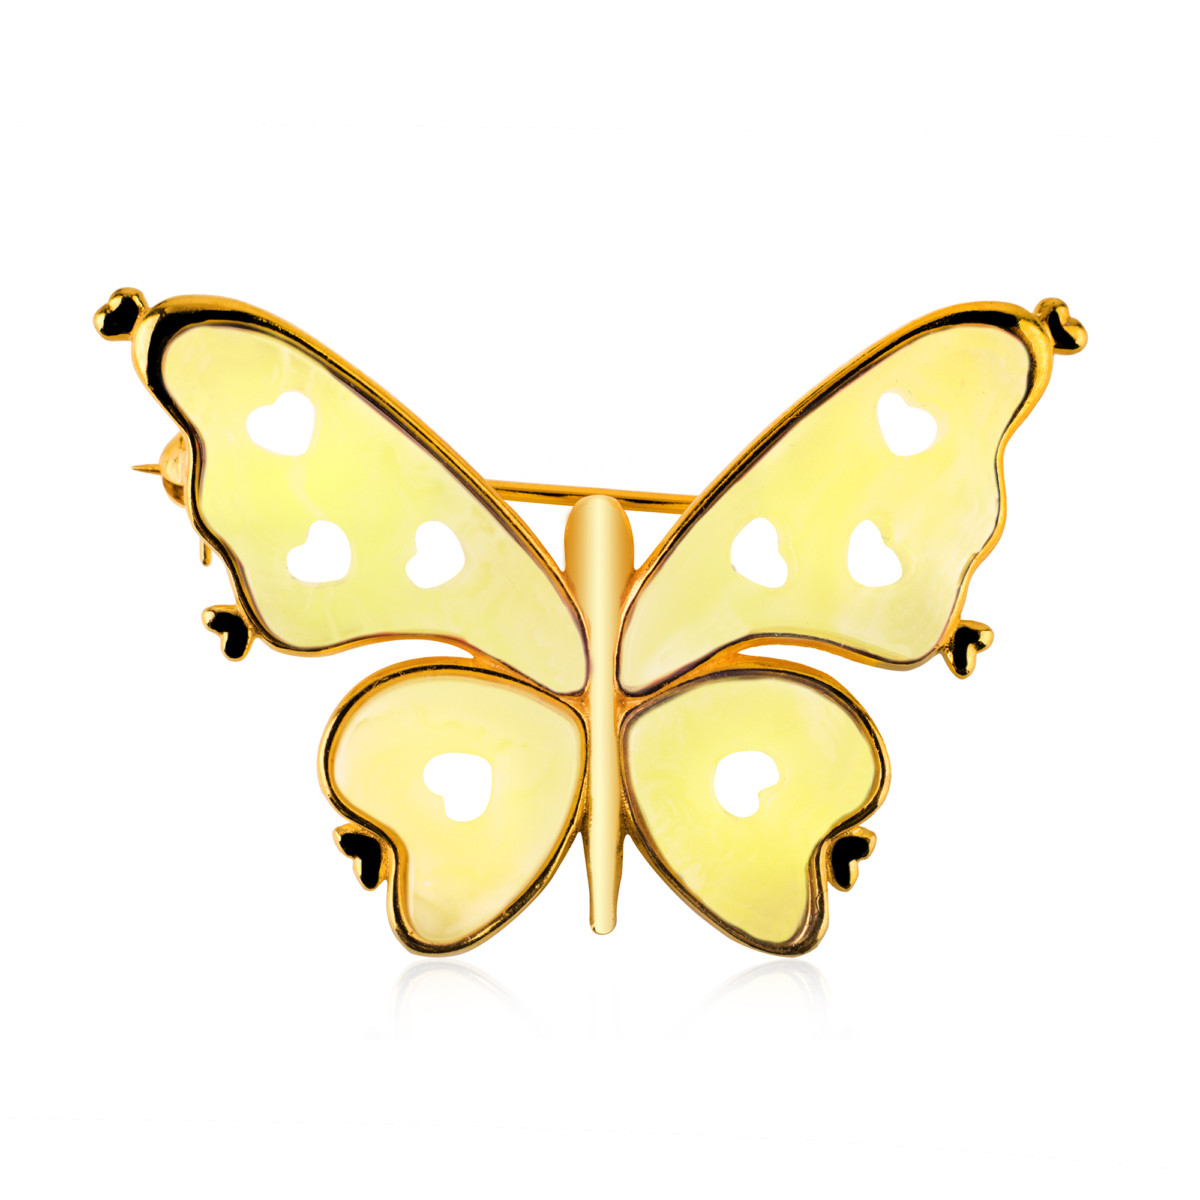 Broszka srebrna pozłacana z mlecznym bursztynem – Butterfly 03